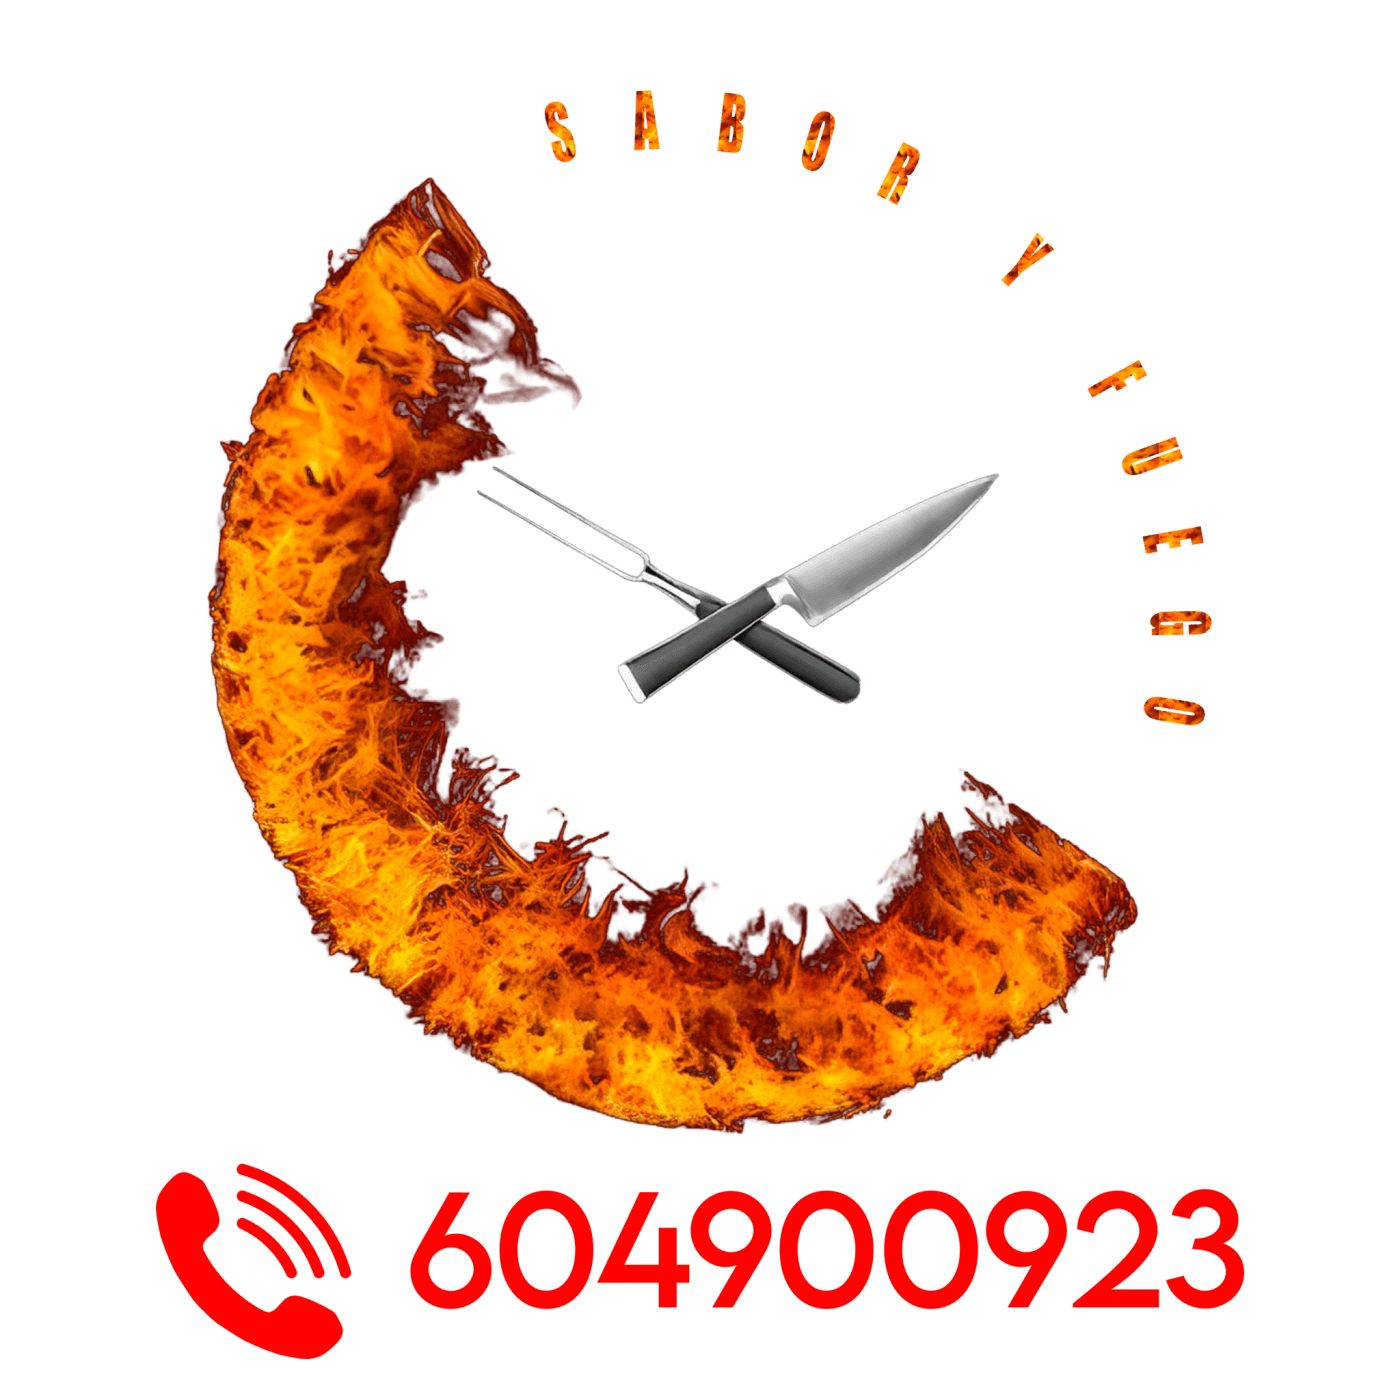 Sabor Y Fuego Logo Con Numero Transparente